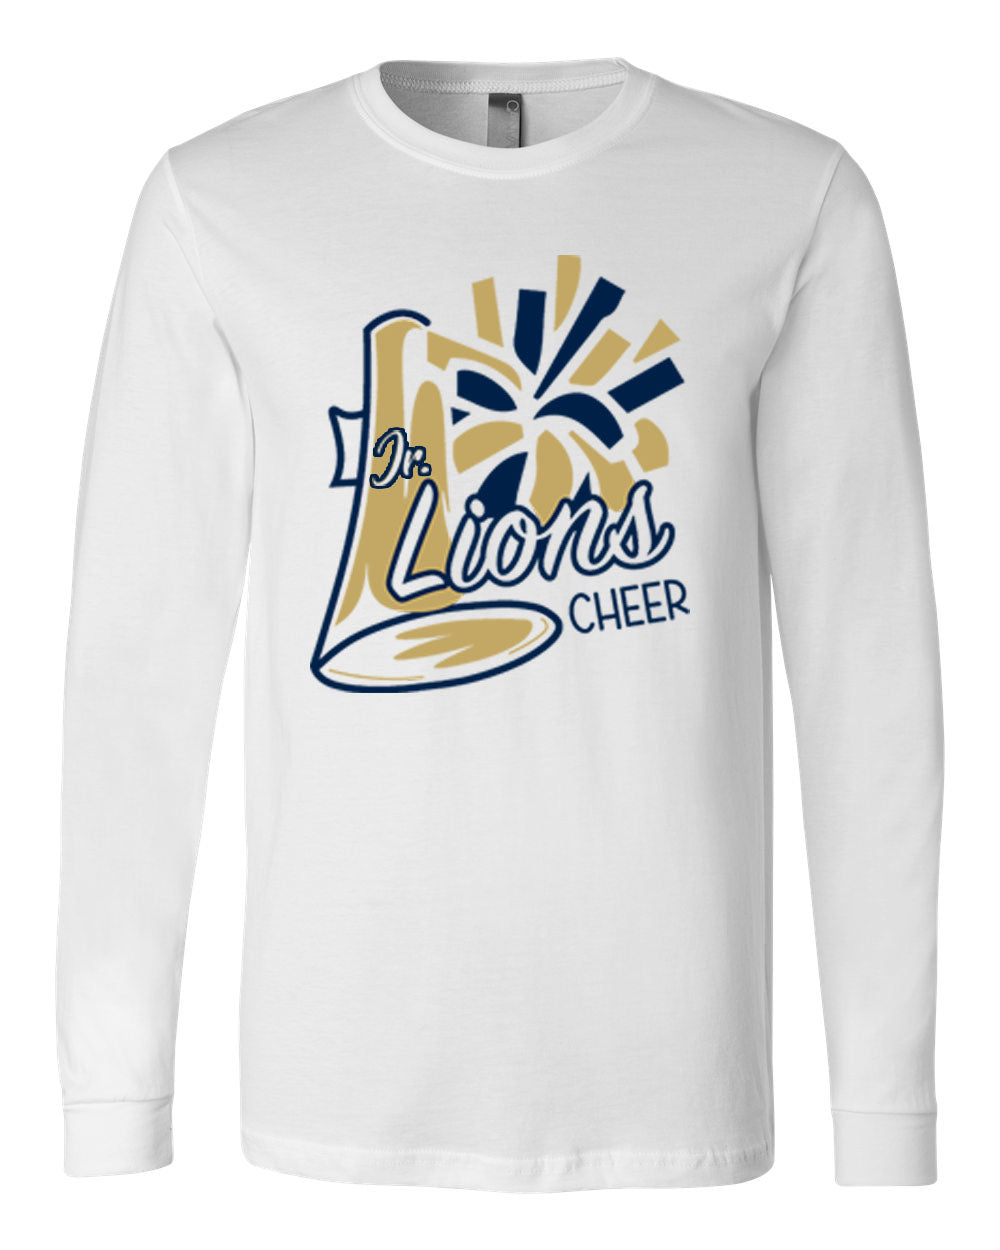 Lions Cheer Design 2 Long Sleeve Shirt